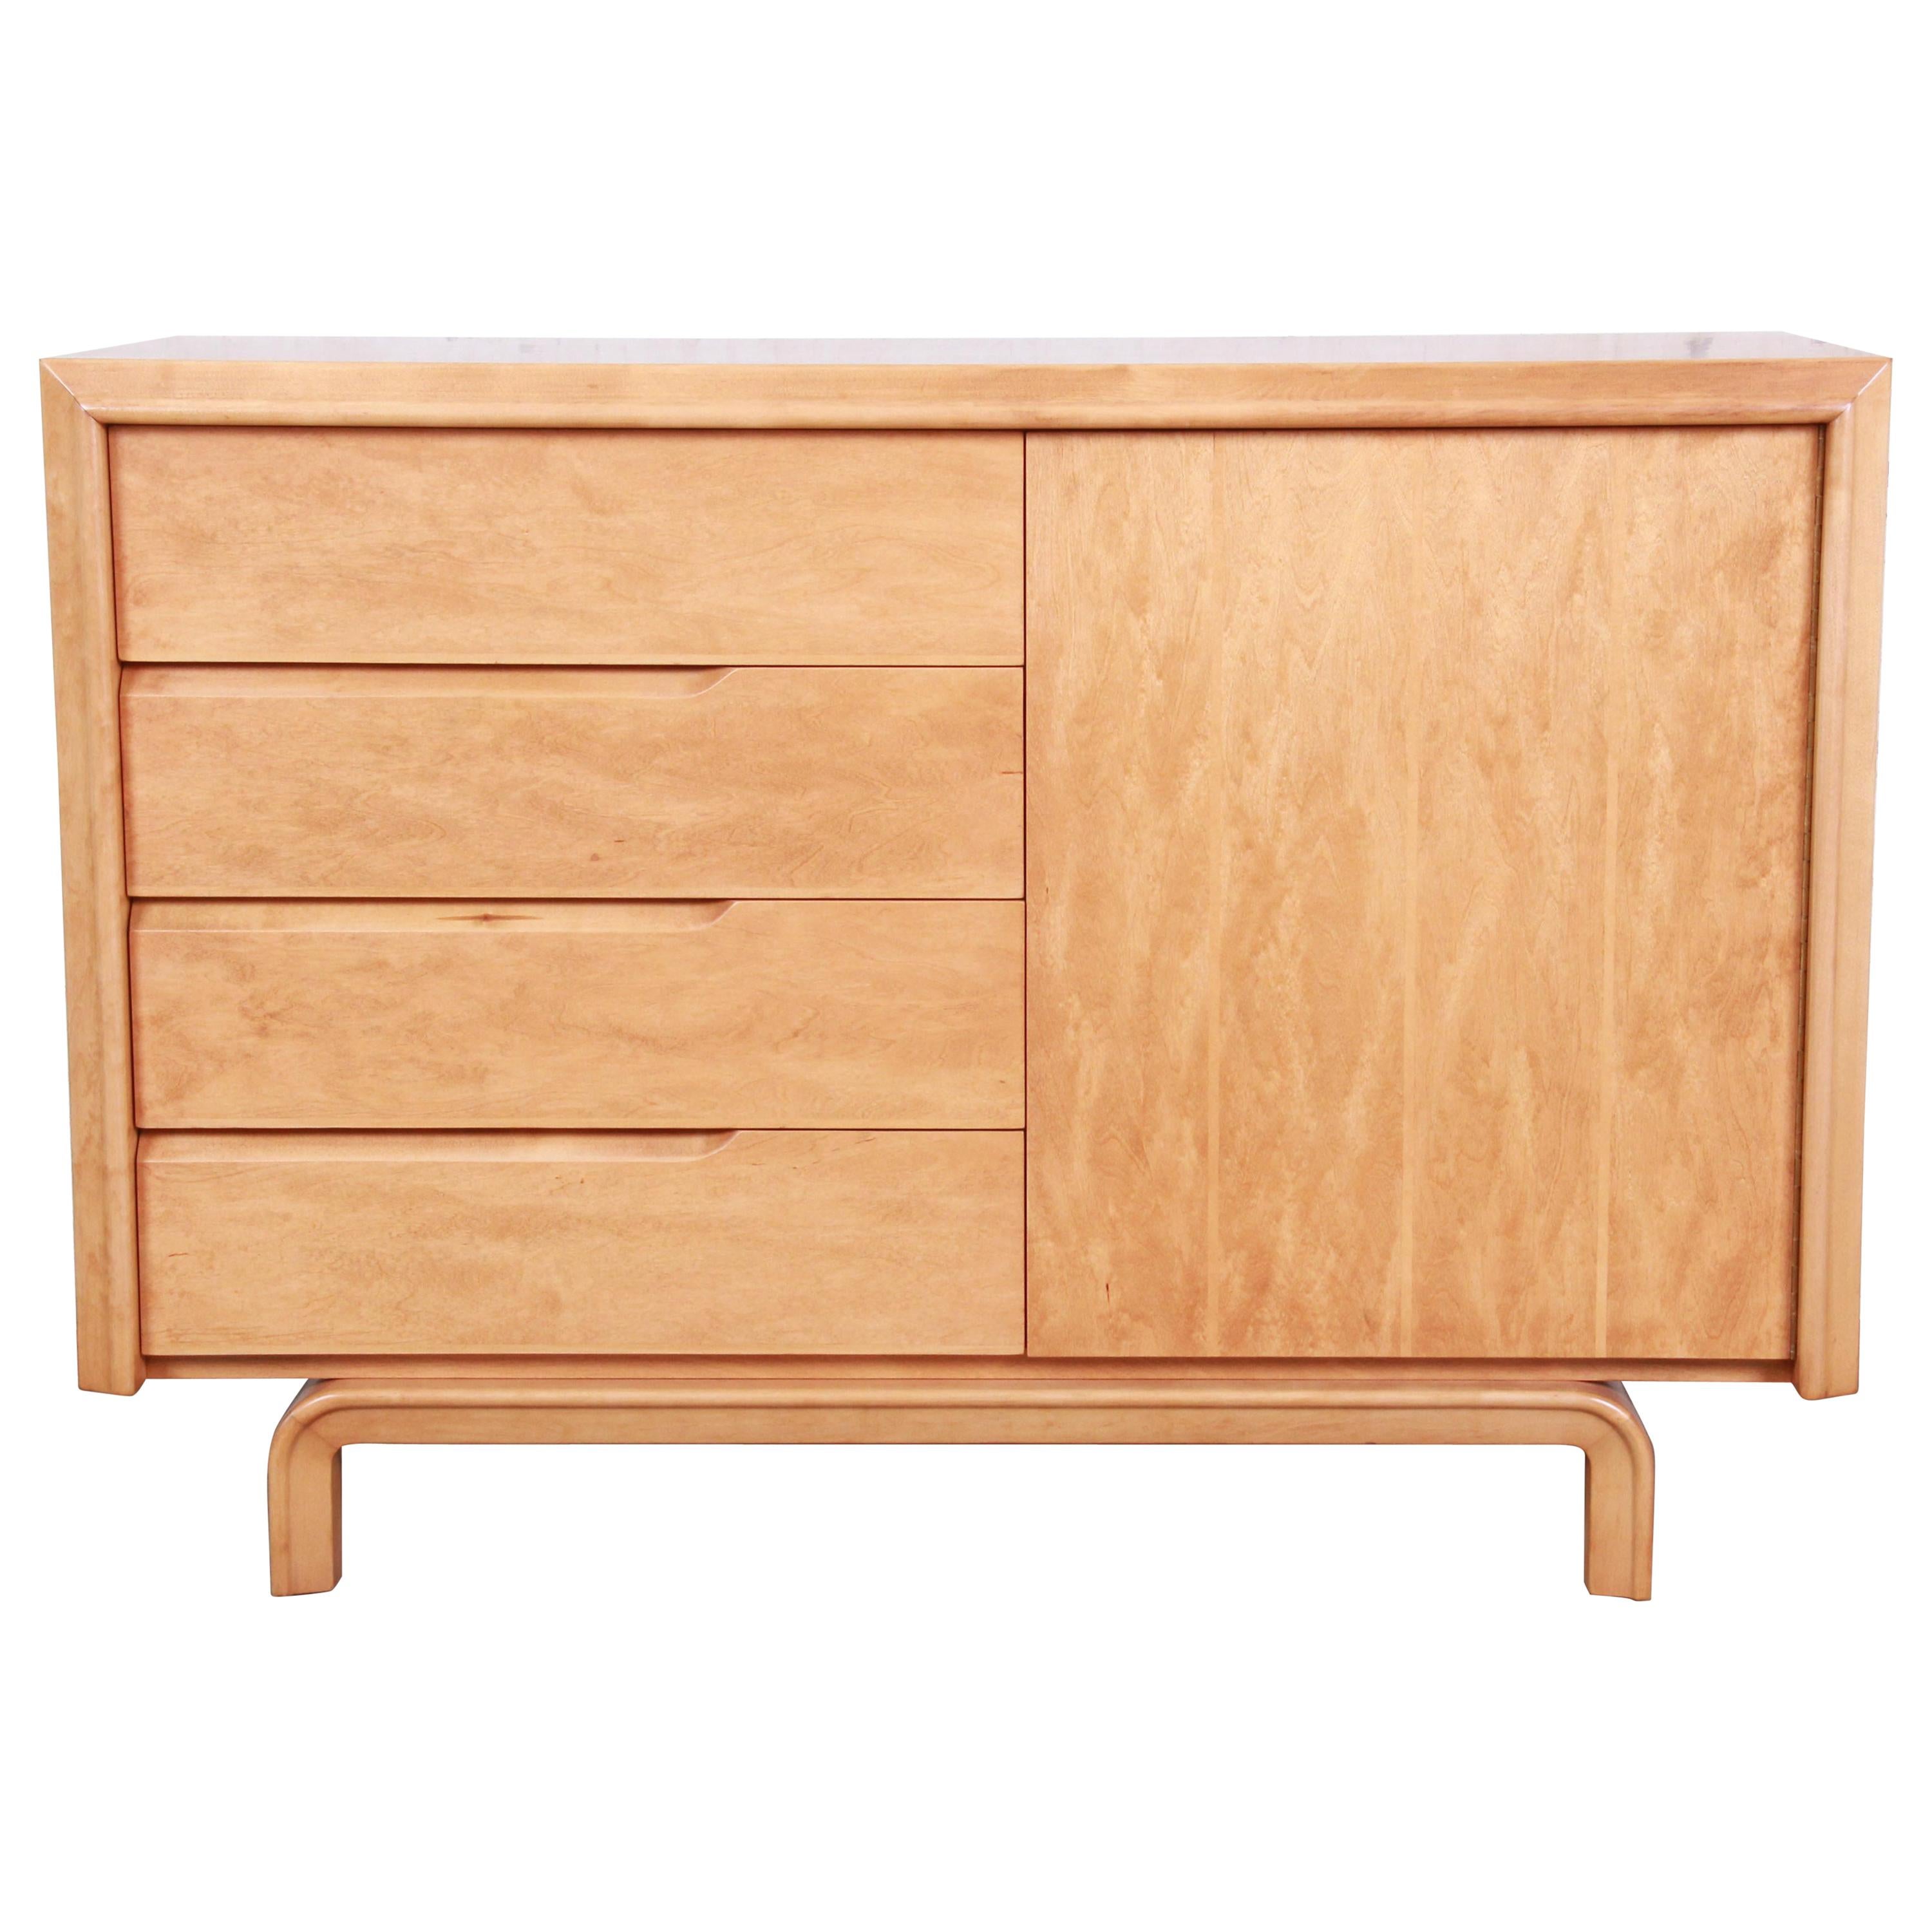 Edmond Spence Swedish Modern Maple Sideboard Credenza, Newly Refinished